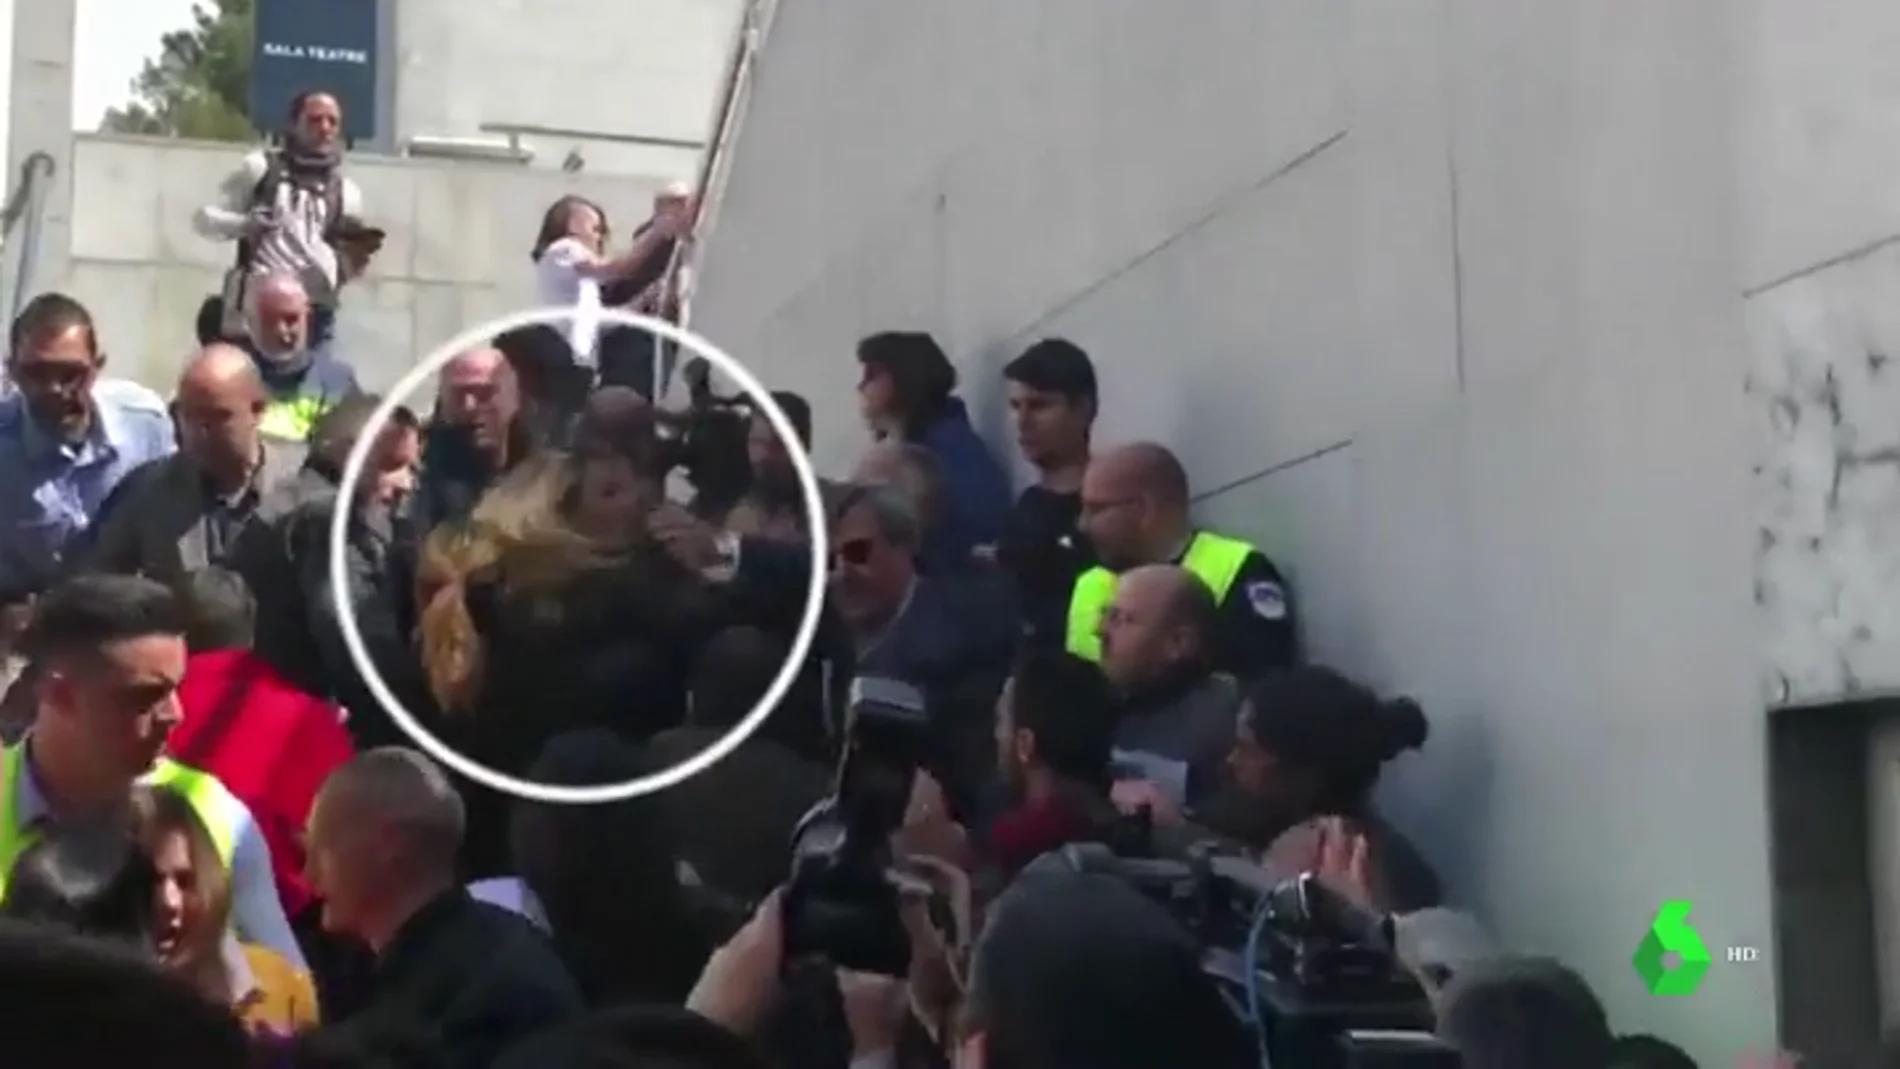 VÍDEO REEMPLAZO | Estudiantes intentan boicotear un acto de Álvarez de Toledo (PP) en la Universidad Autónoma de Barcelona